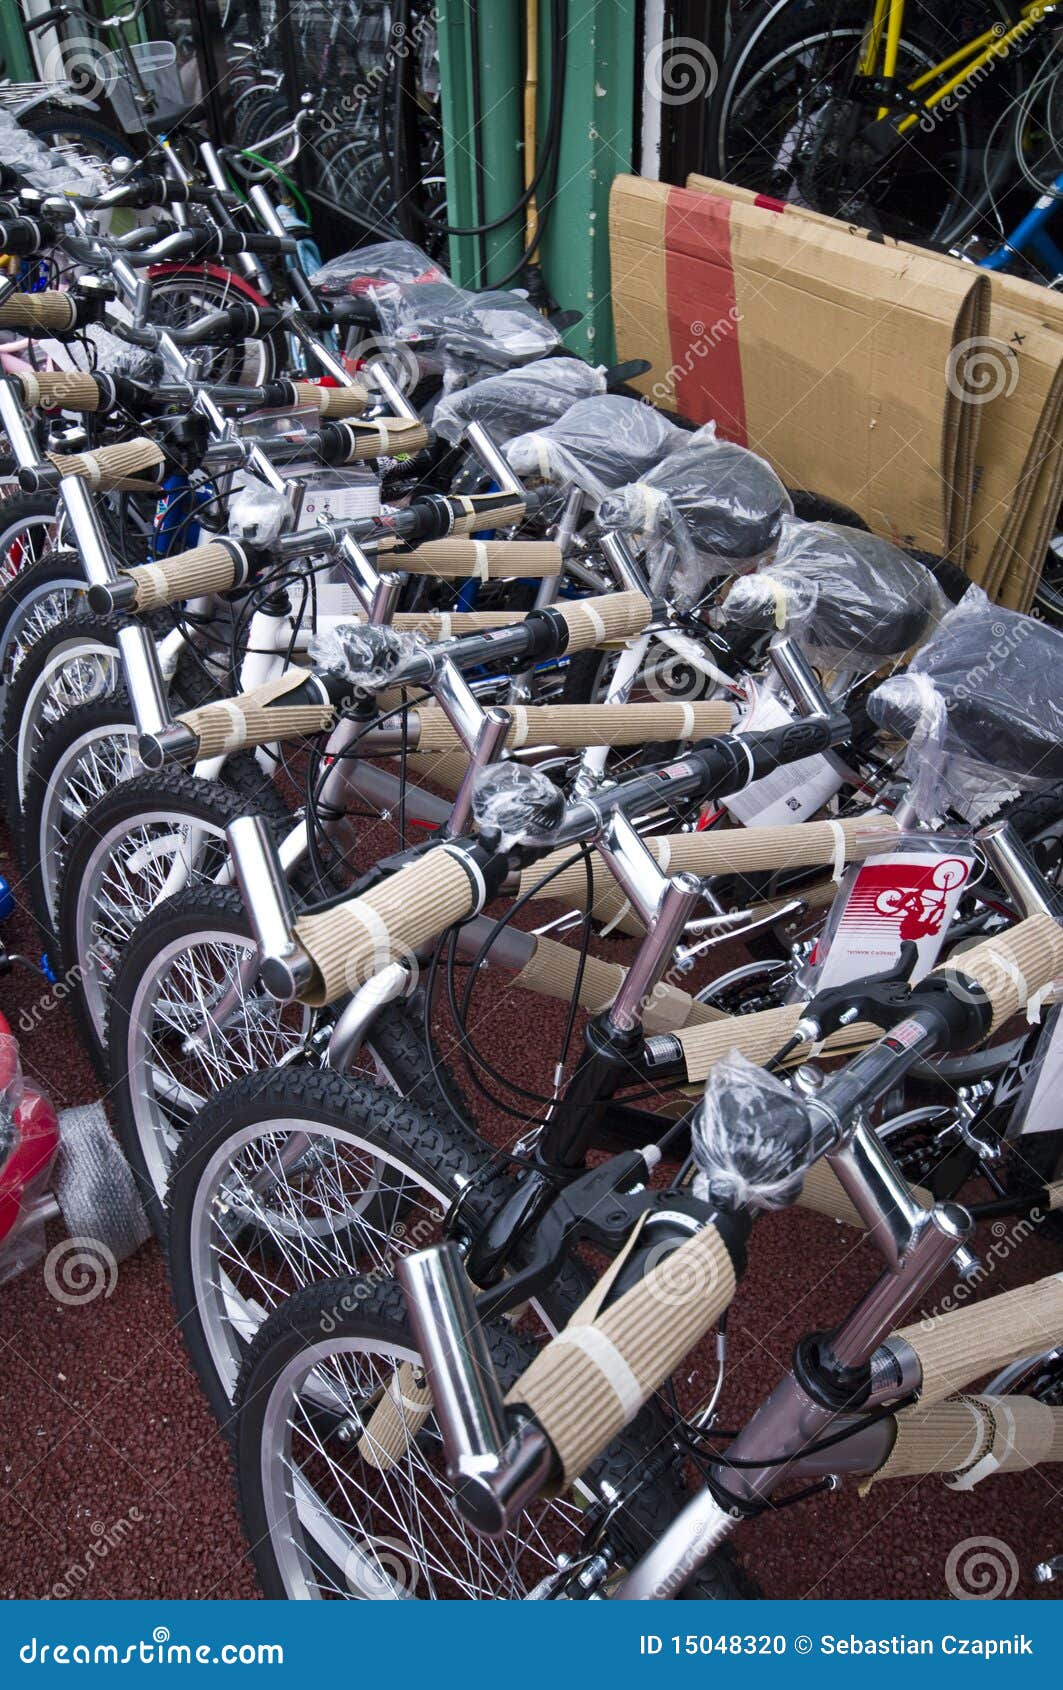 1,395 Bikes Sale Stock Photos